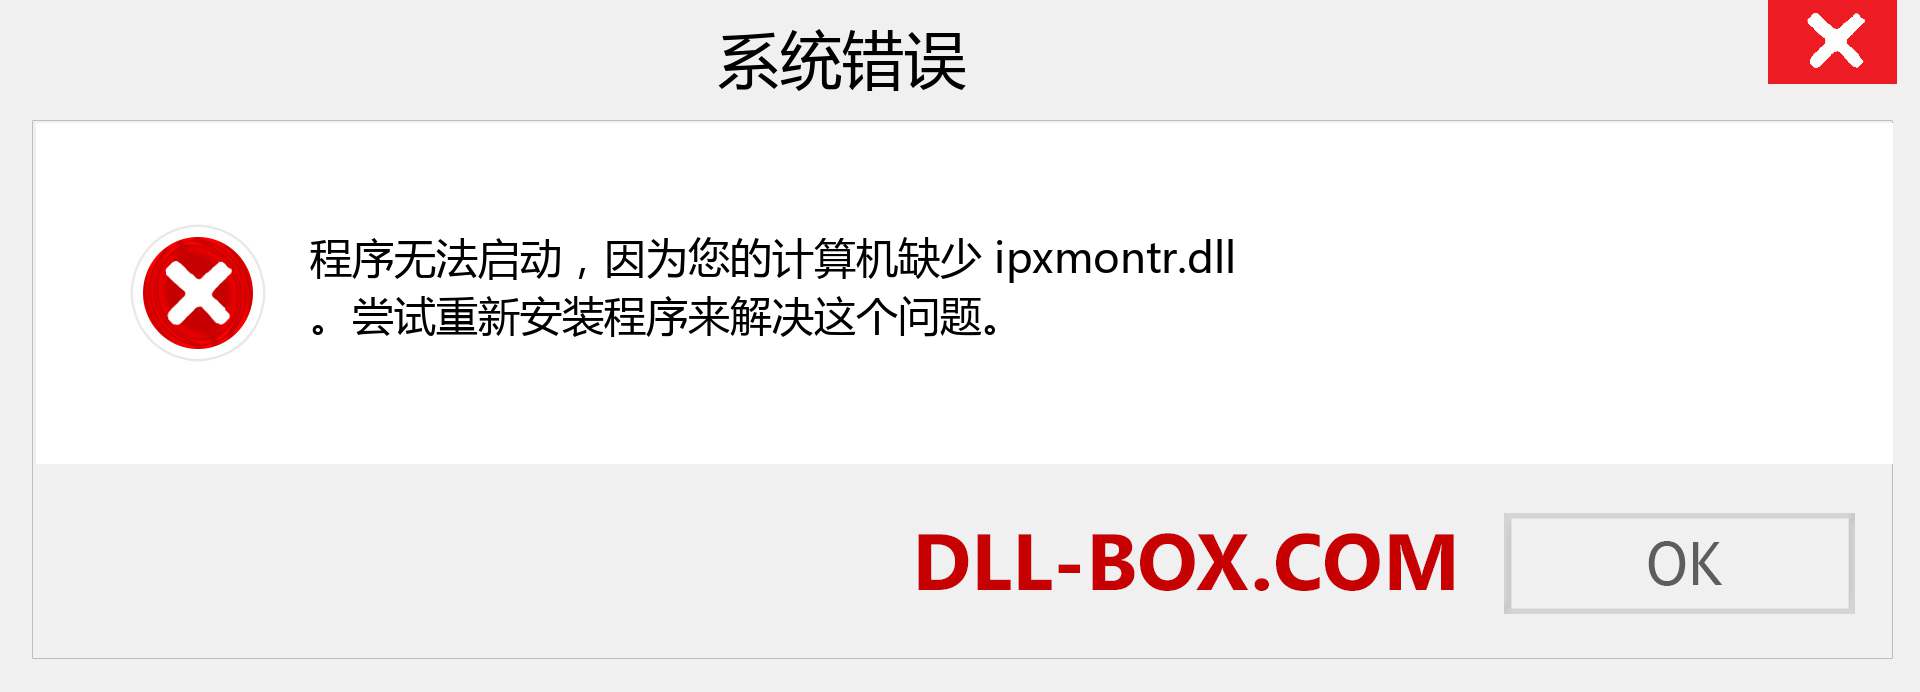 ipxmontr.dll 文件丢失？。 适用于 Windows 7、8、10 的下载 - 修复 Windows、照片、图像上的 ipxmontr dll 丢失错误